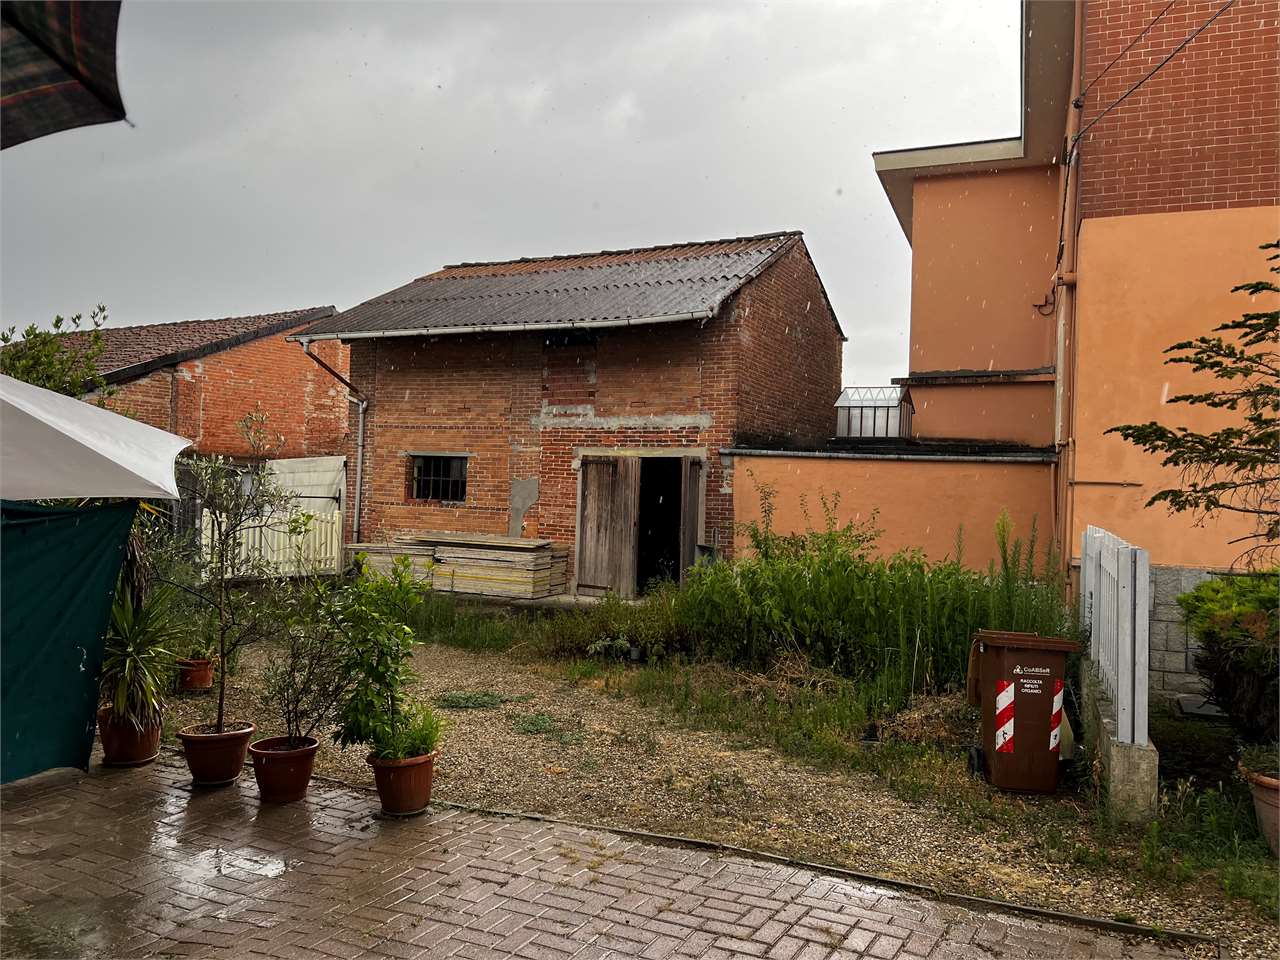 Rustico / Casale in vendita a Govone, 2 locali, prezzo € 13.500 | PortaleAgenzieImmobiliari.it